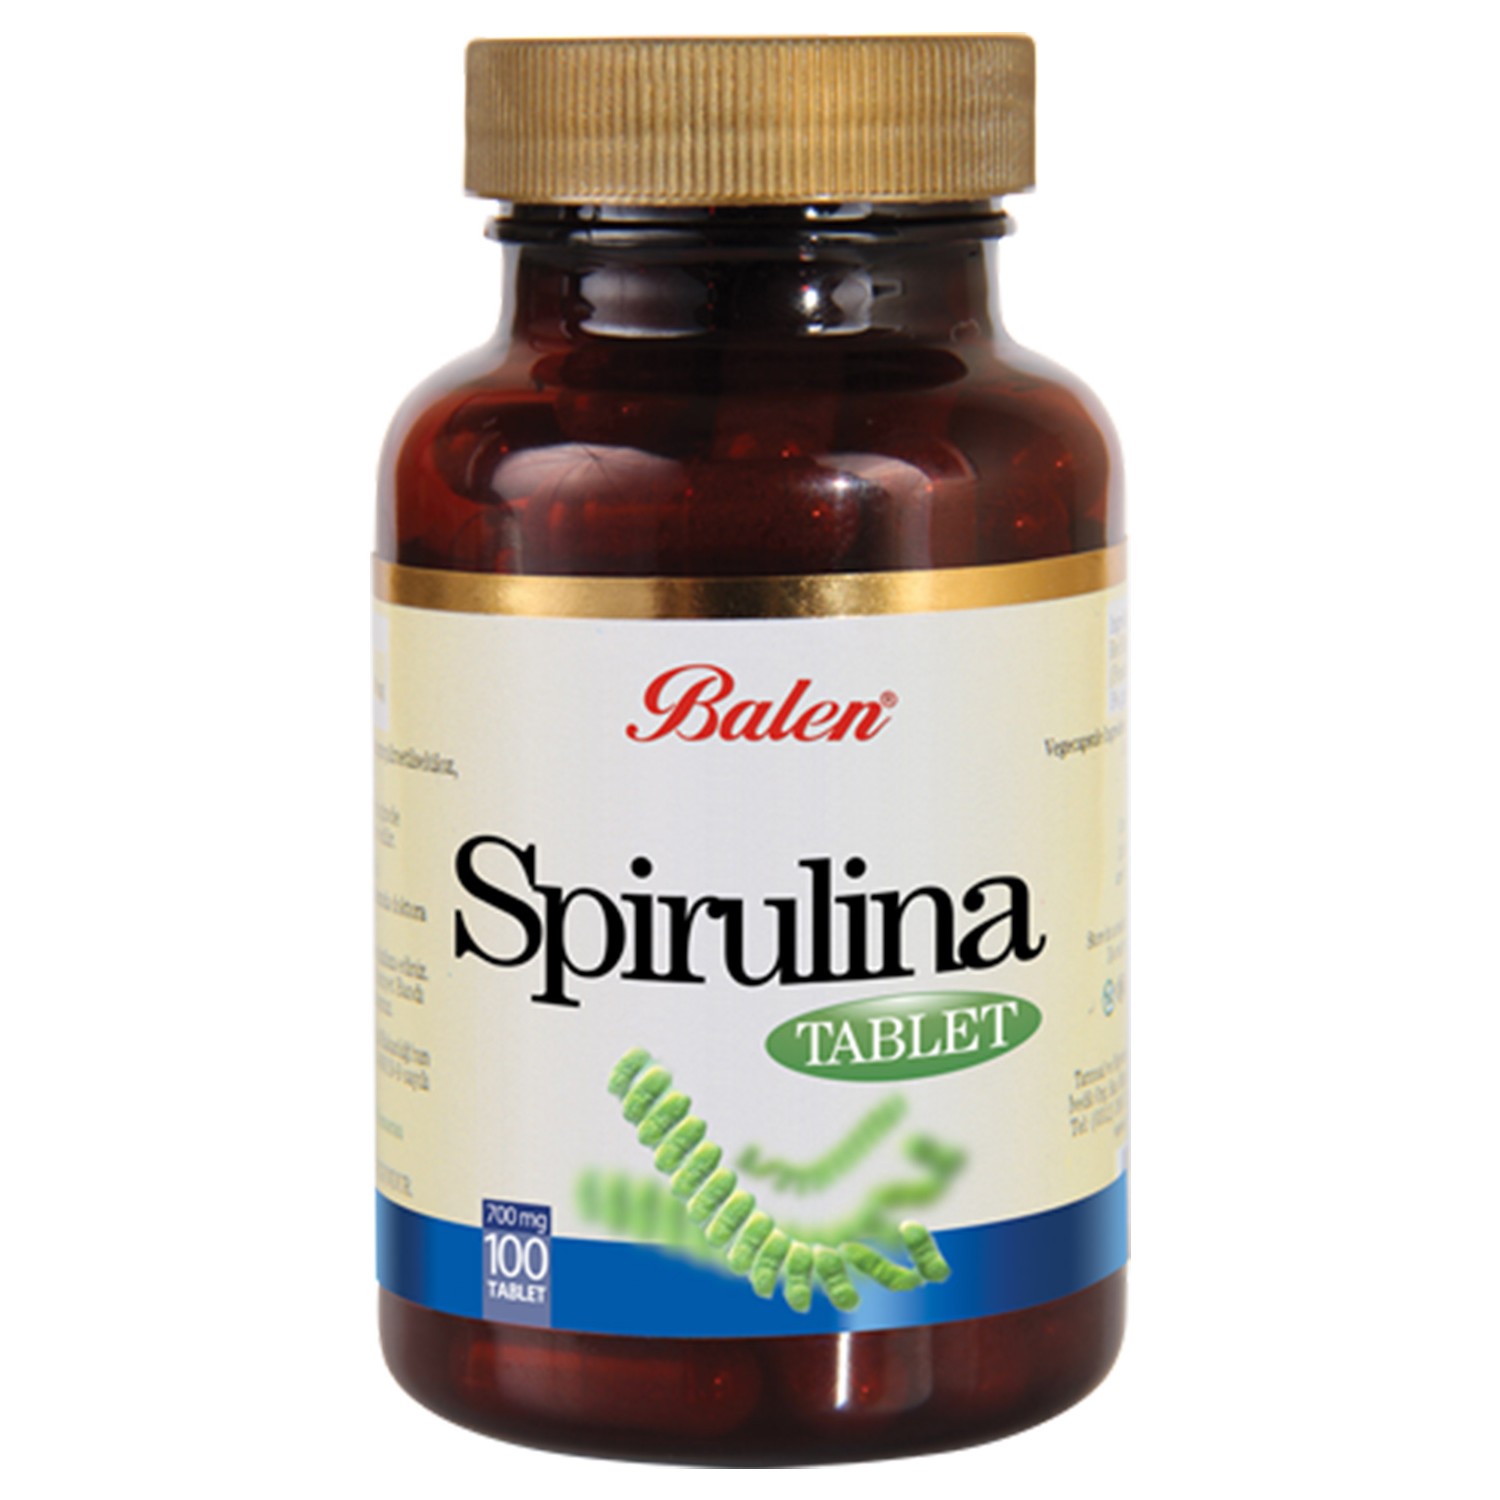 Пищевая добавка Balen Spirulina 740 мг, 100 таблеток пищевая добавка balen spirulina 740 мг 100 таблеток